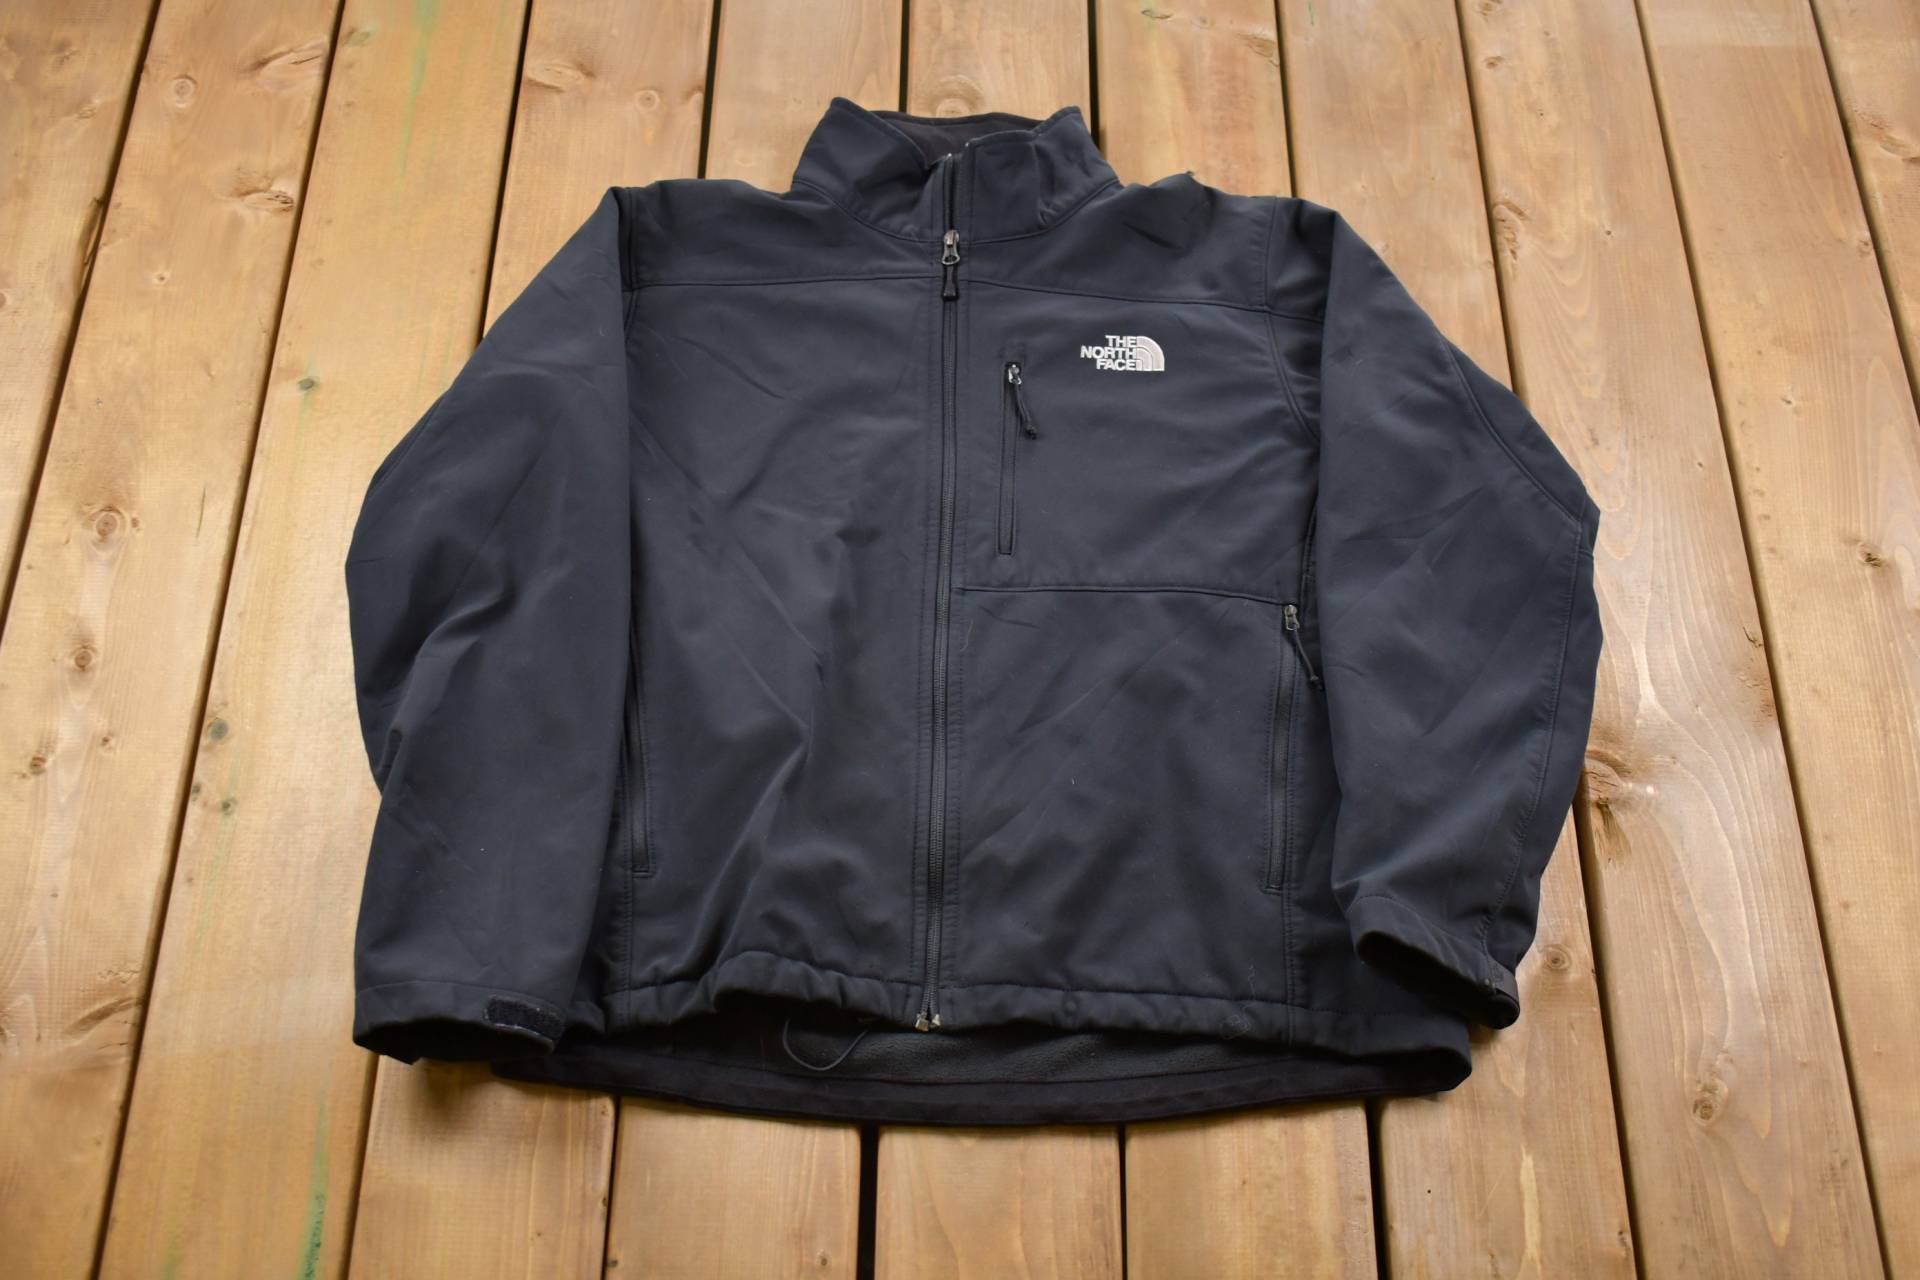 Vintage 1990S The North Face Sweatshirt Mit Durchgehendem Reißverschluss/90S Zip Up Souvenir Athleisure Streetwear von Lostboysvintage